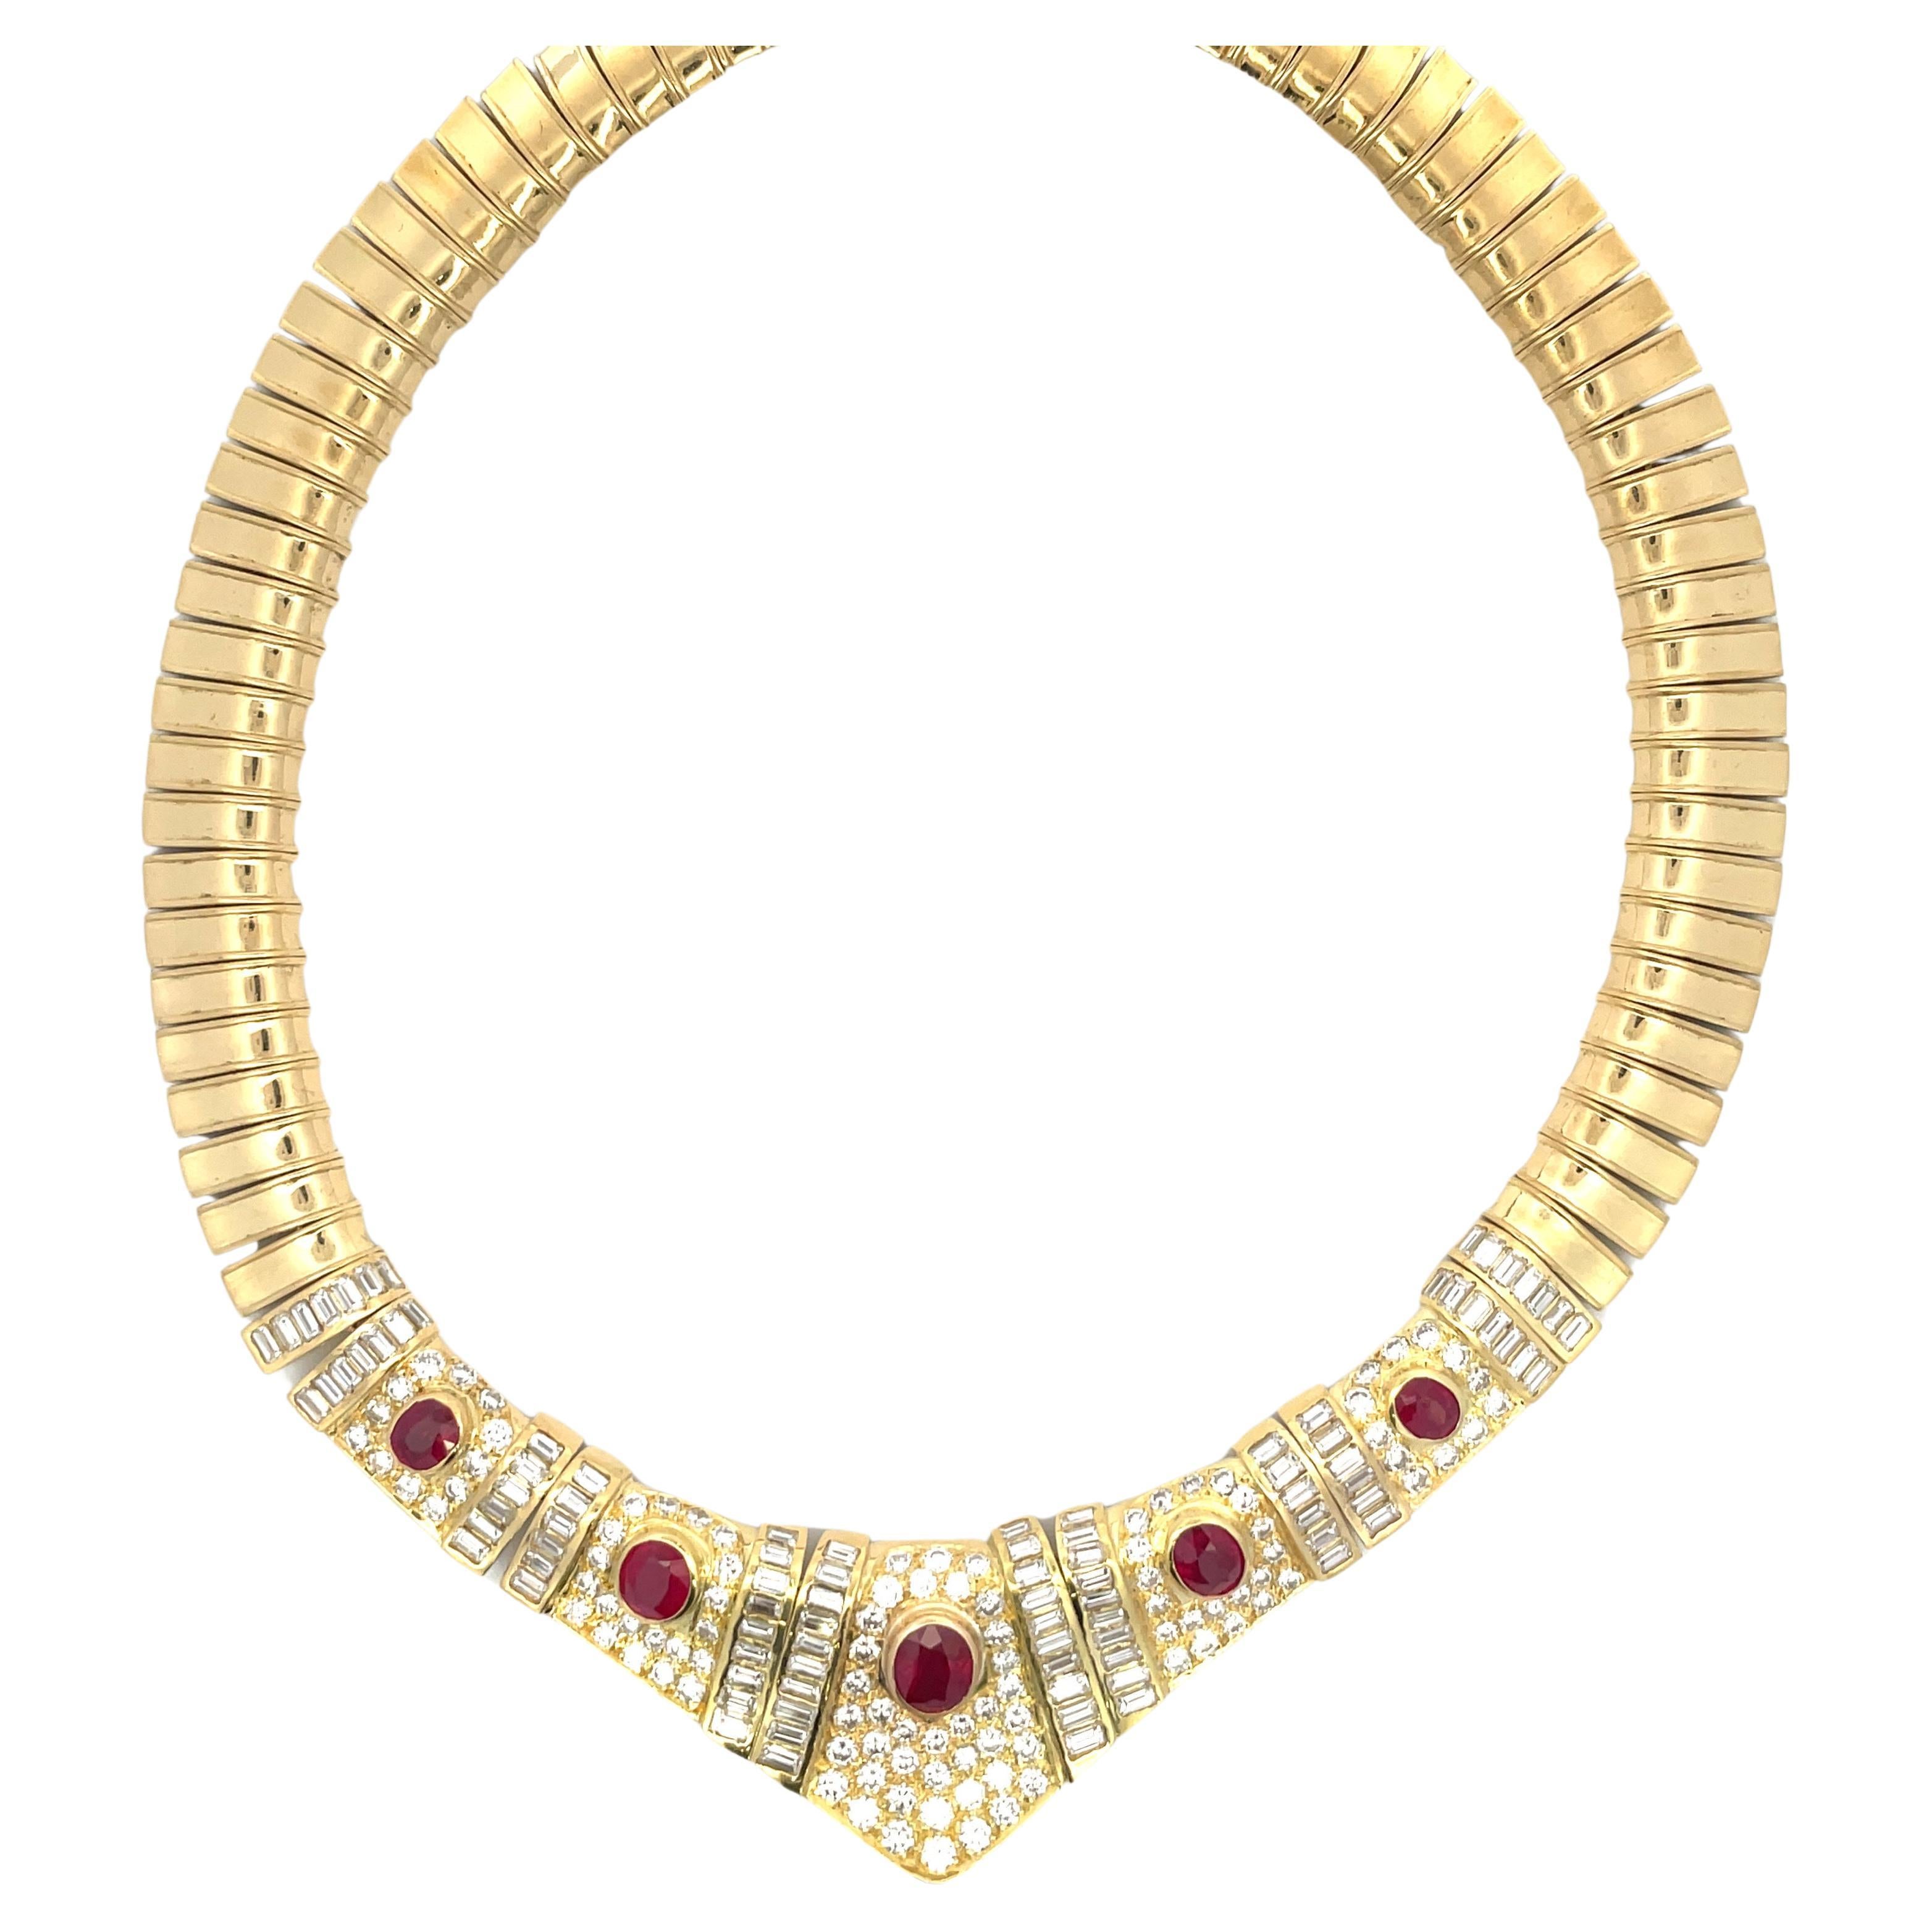 Collier collier de rubis de Birmanie certifié 24,50 carats et or jaune 18 carats